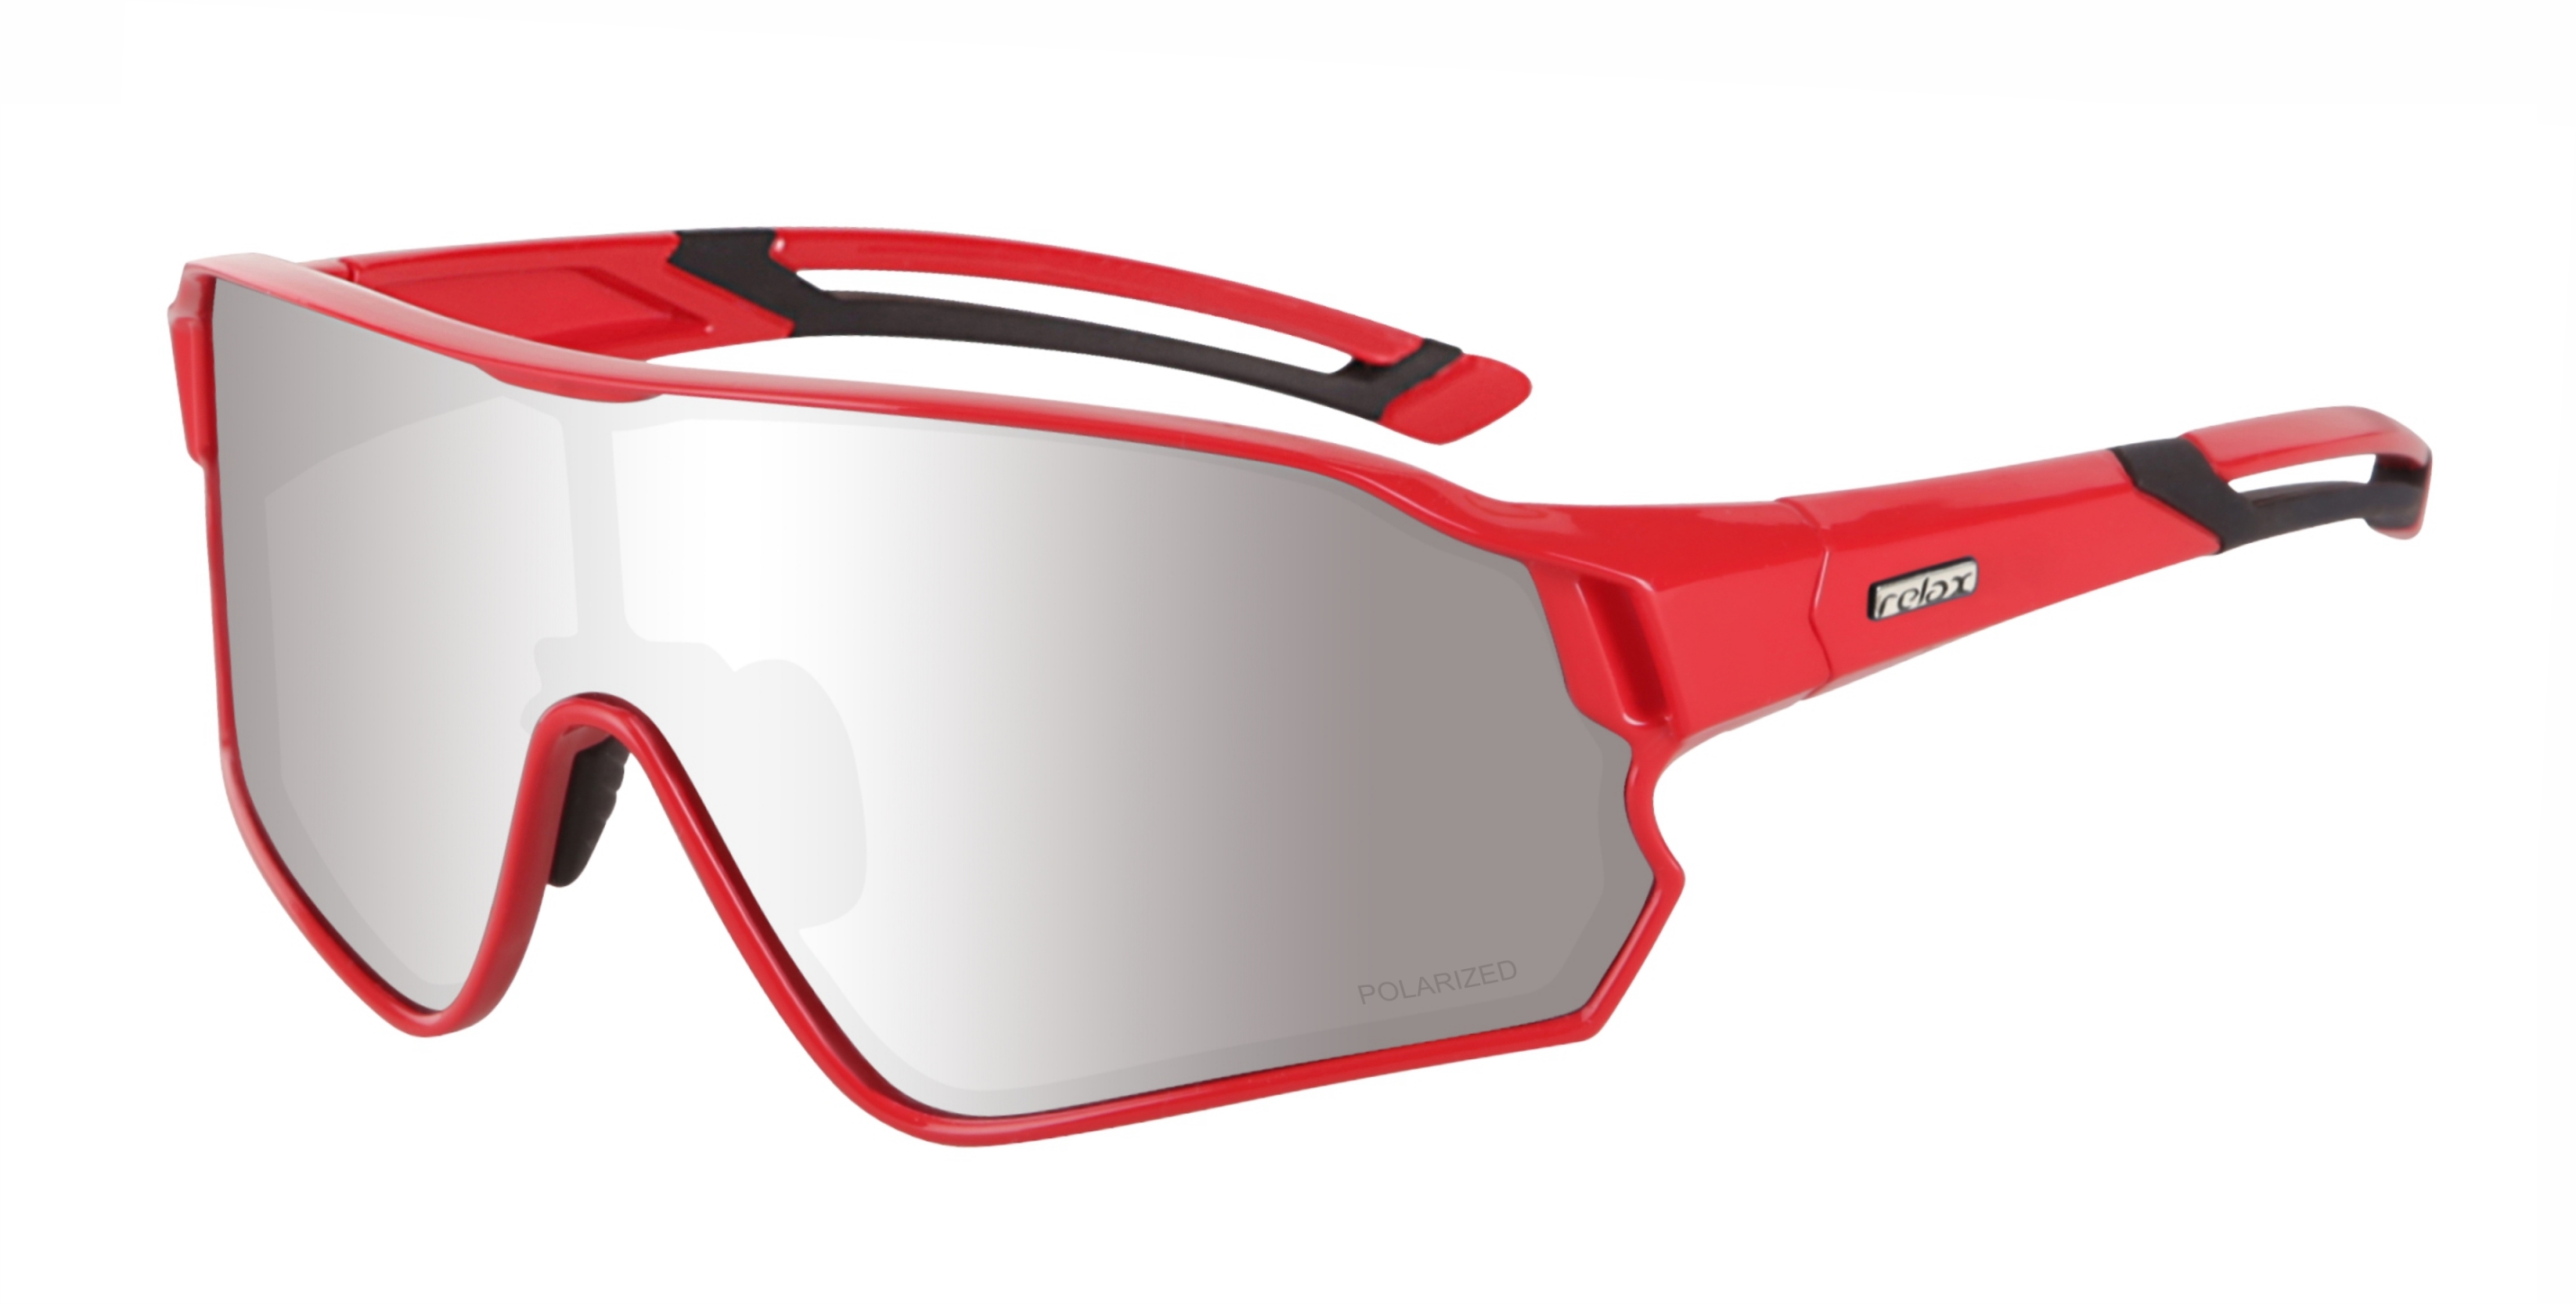 Polarized sport sunglasses Relax Artan R5416I standard